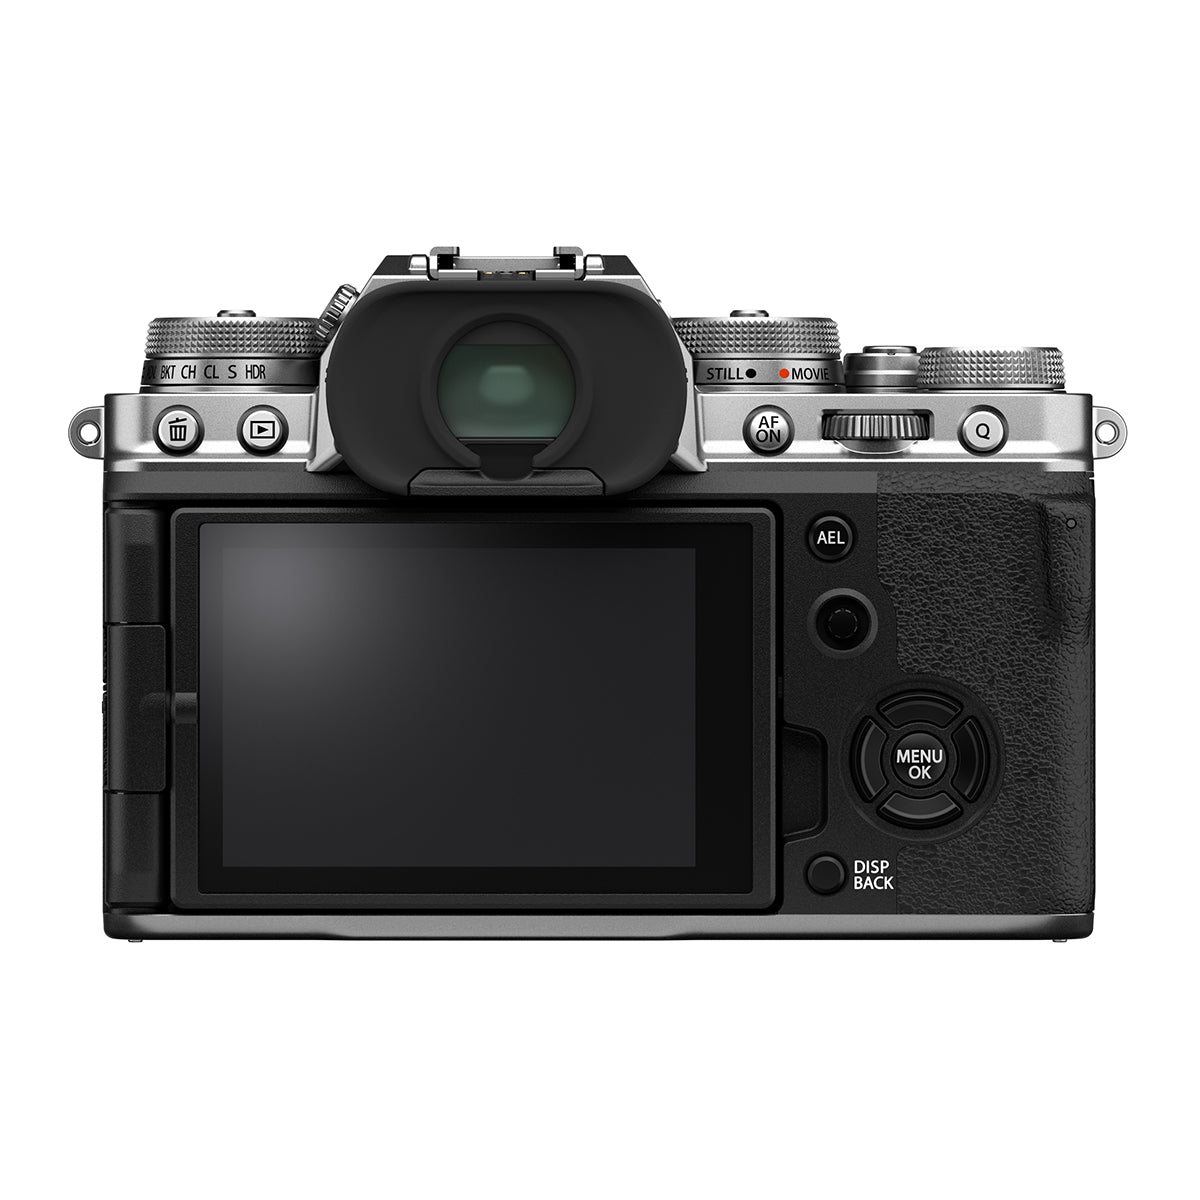 Fujifilm X-T4 Digital Camera w/18-55mm Lens Kit (Silver)